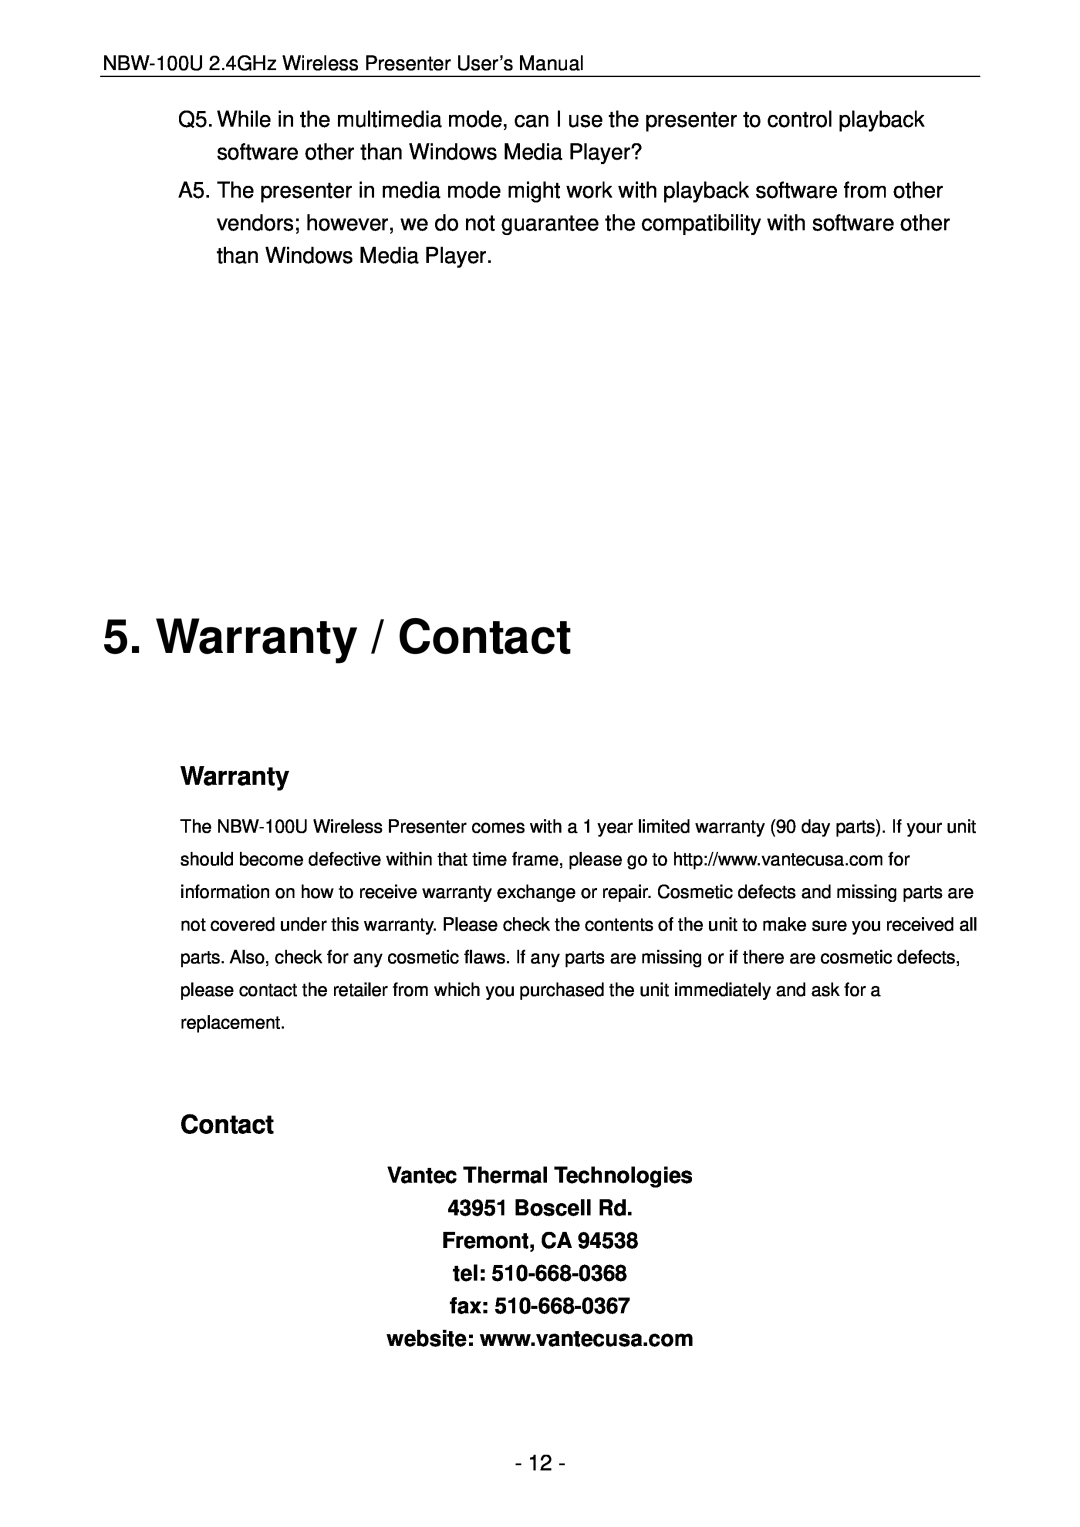 Vantec NBW-100U user manual Warranty / Contact, Vantec Thermal Technologies 43951 Boscell Rd Fremont, CA tel fax 